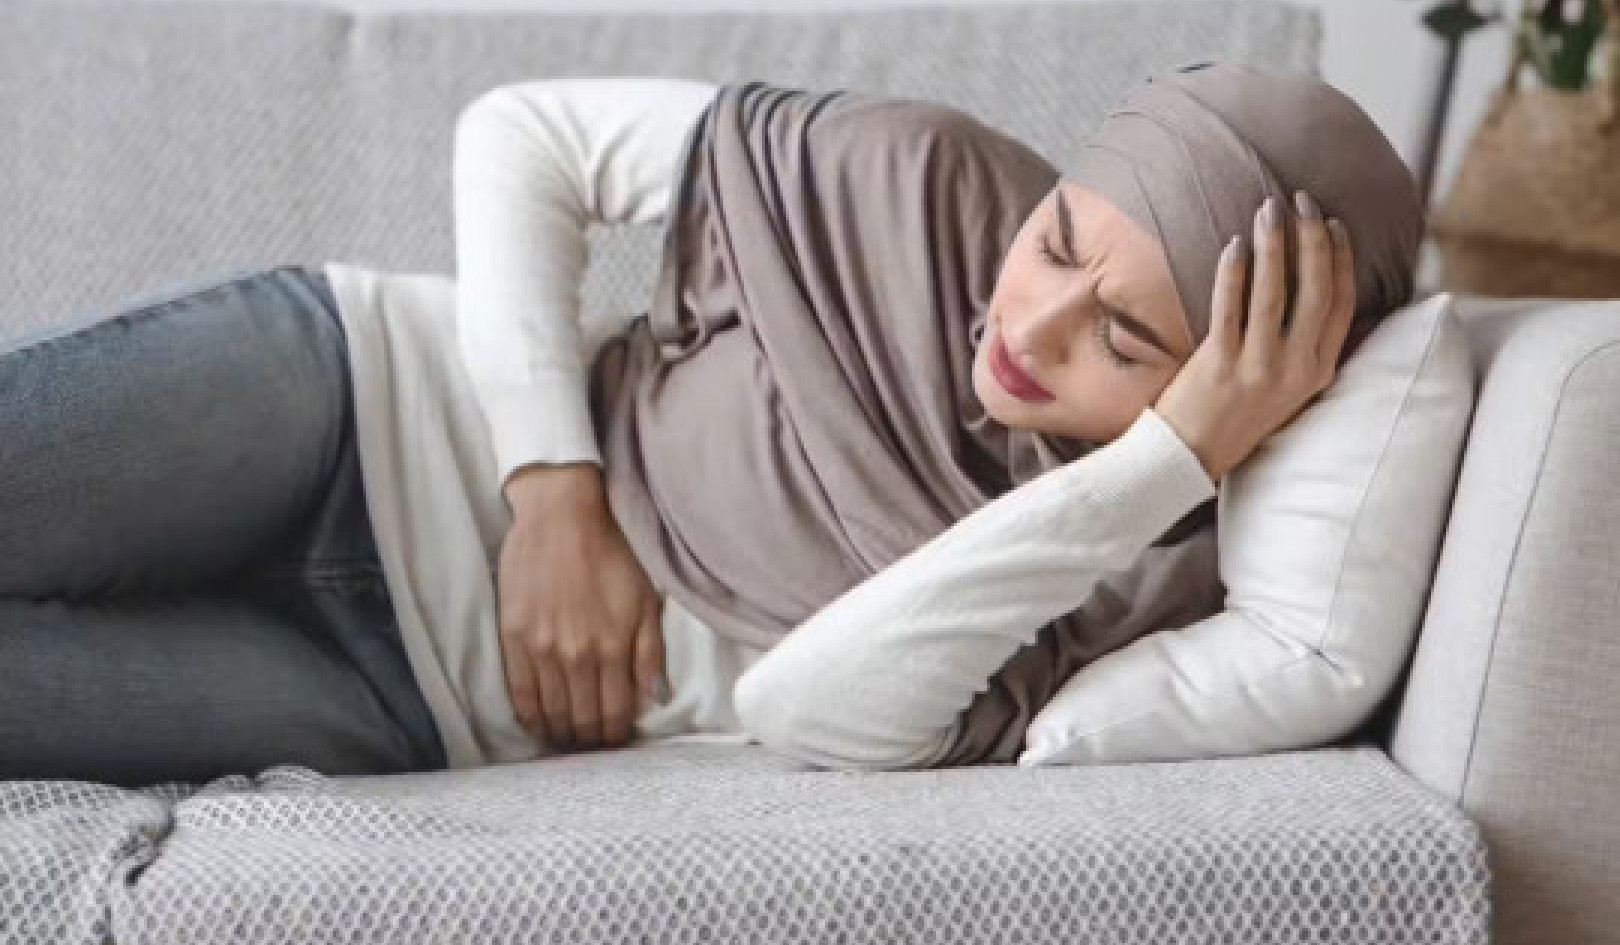 آلات TENS لآلام الدورة الشهرية وبطانة الرحم: هل يمكن أن توفر الراحة؟